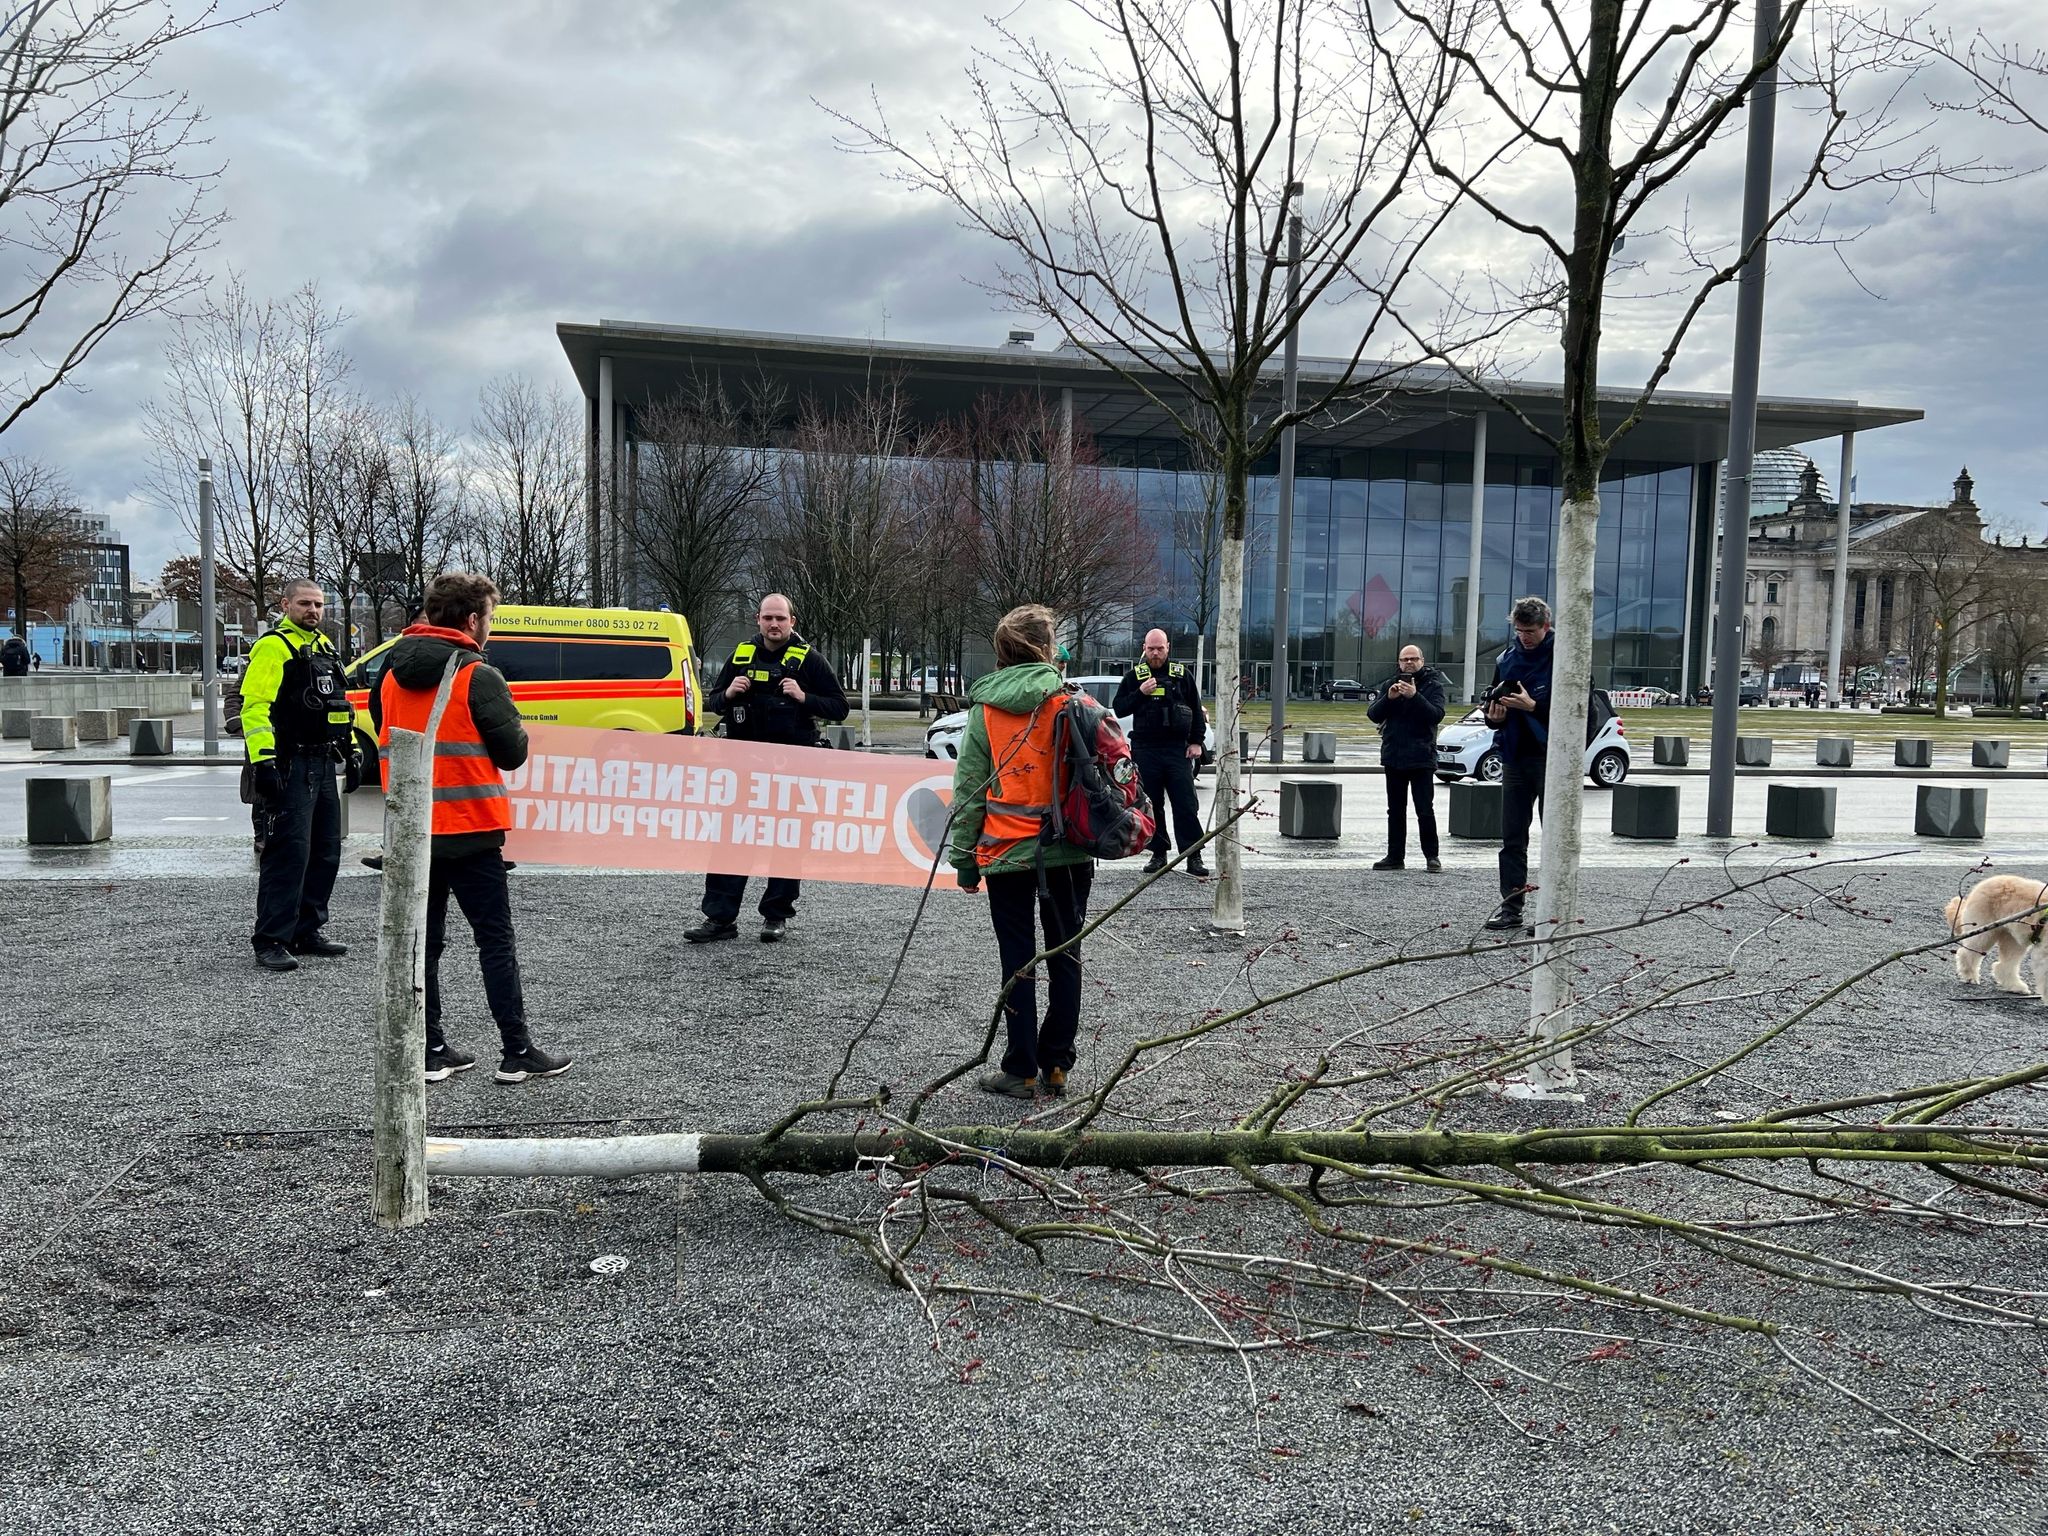 Klimaschutz-Demonstranten stehen an einem gefällten Baum am Bundeskanzleramt.